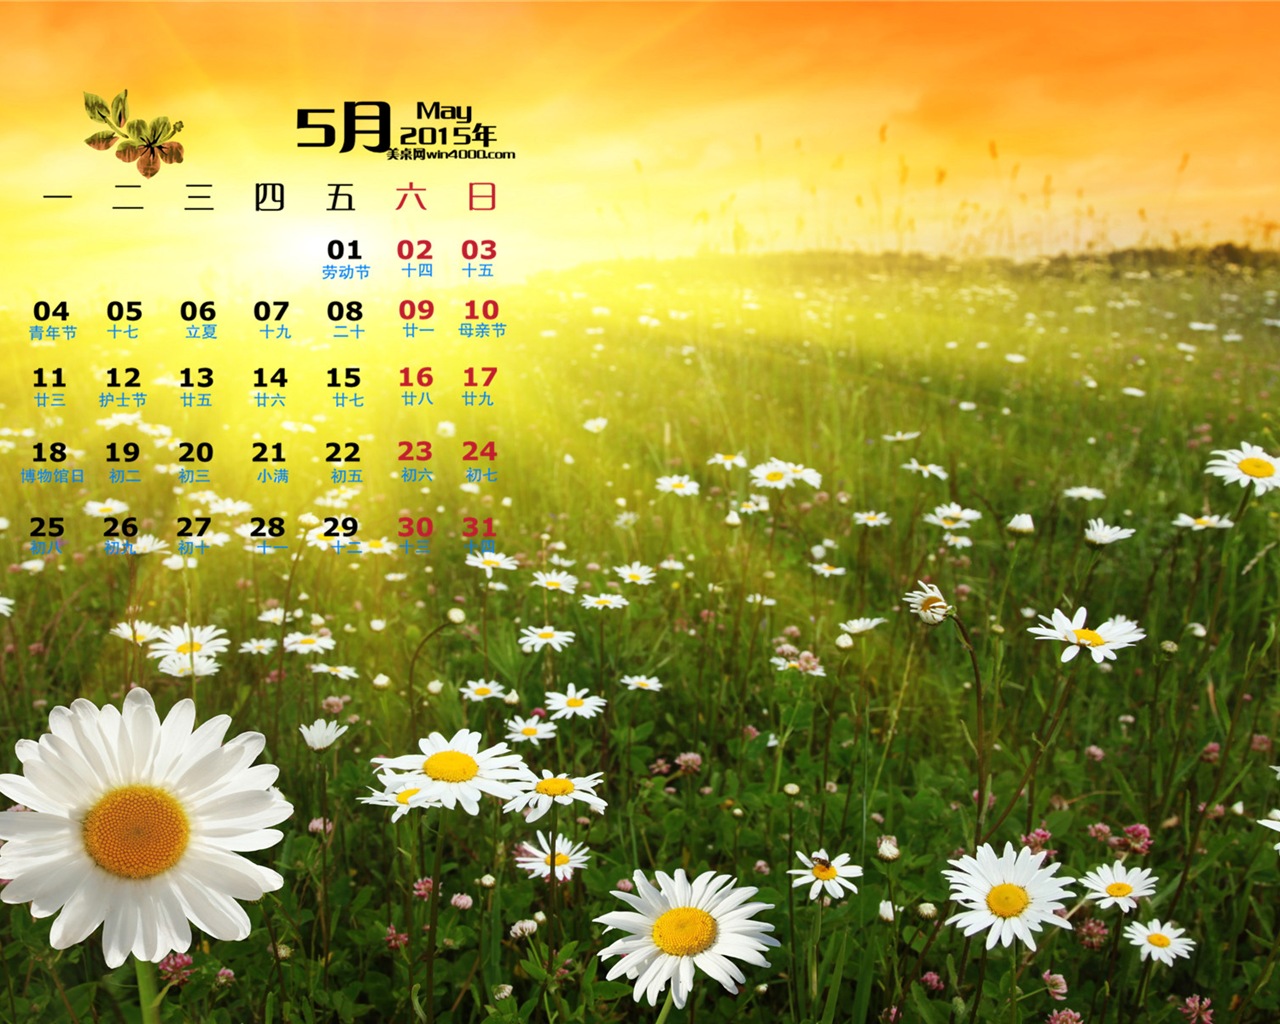 Mai 2015 Kalender Wallpaper (1) #15 - 1280x1024